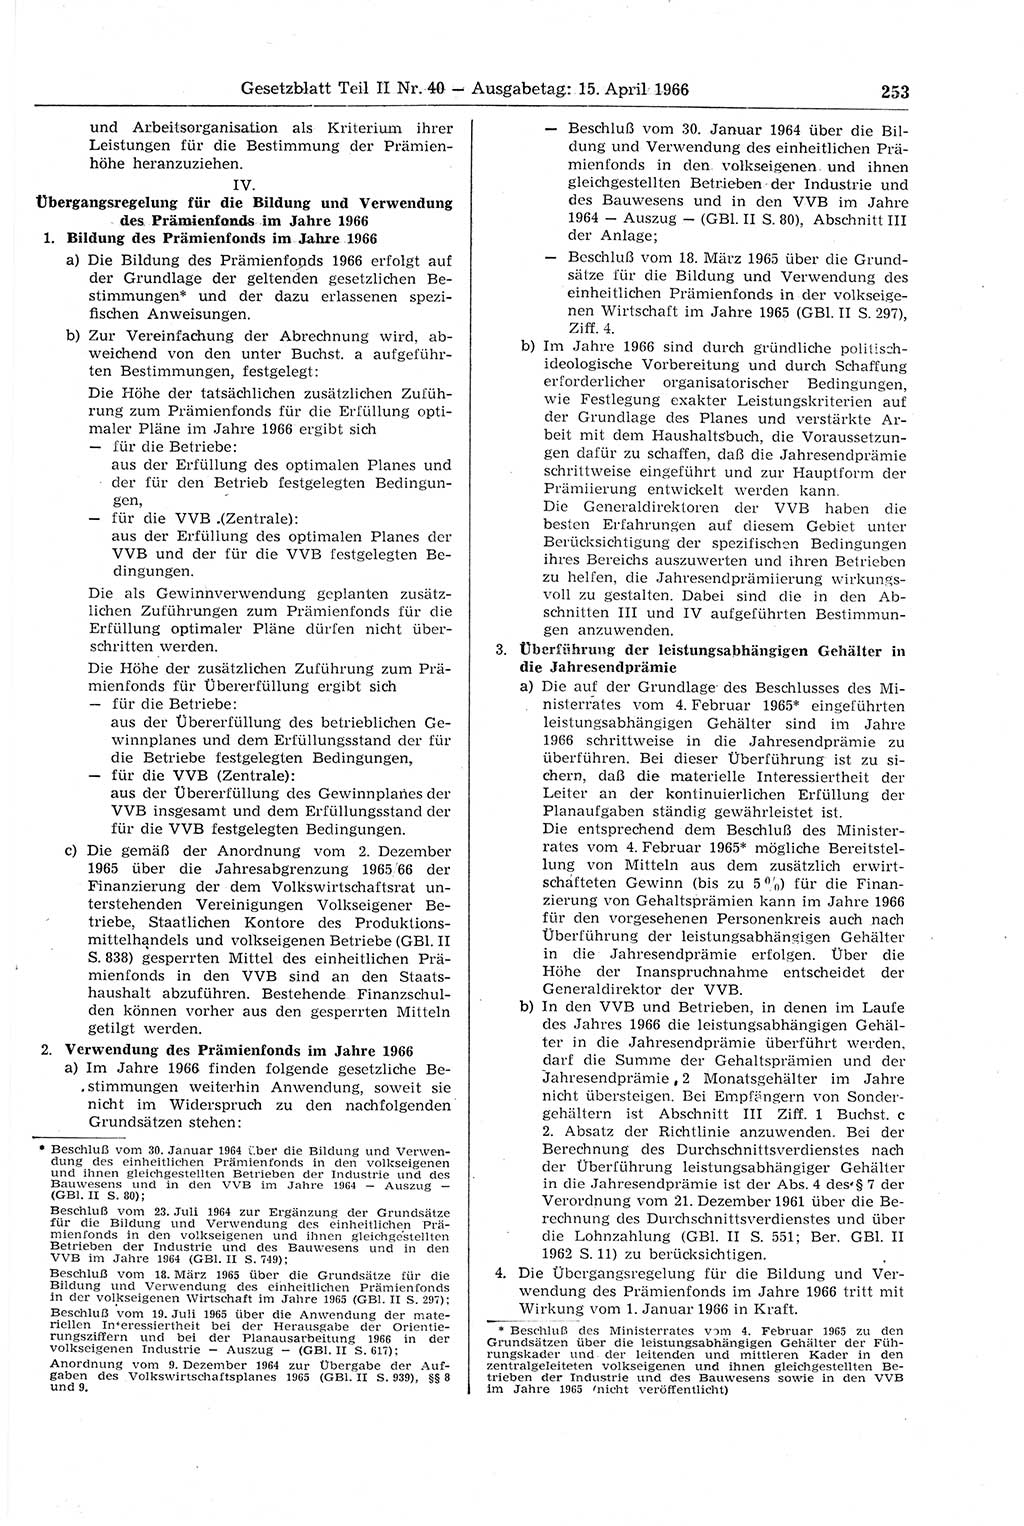 Gesetzblatt (GBl.) der Deutschen Demokratischen Republik (DDR) Teil ⅠⅠ 1966, Seite 253 (GBl. DDR ⅠⅠ 1966, S. 253)